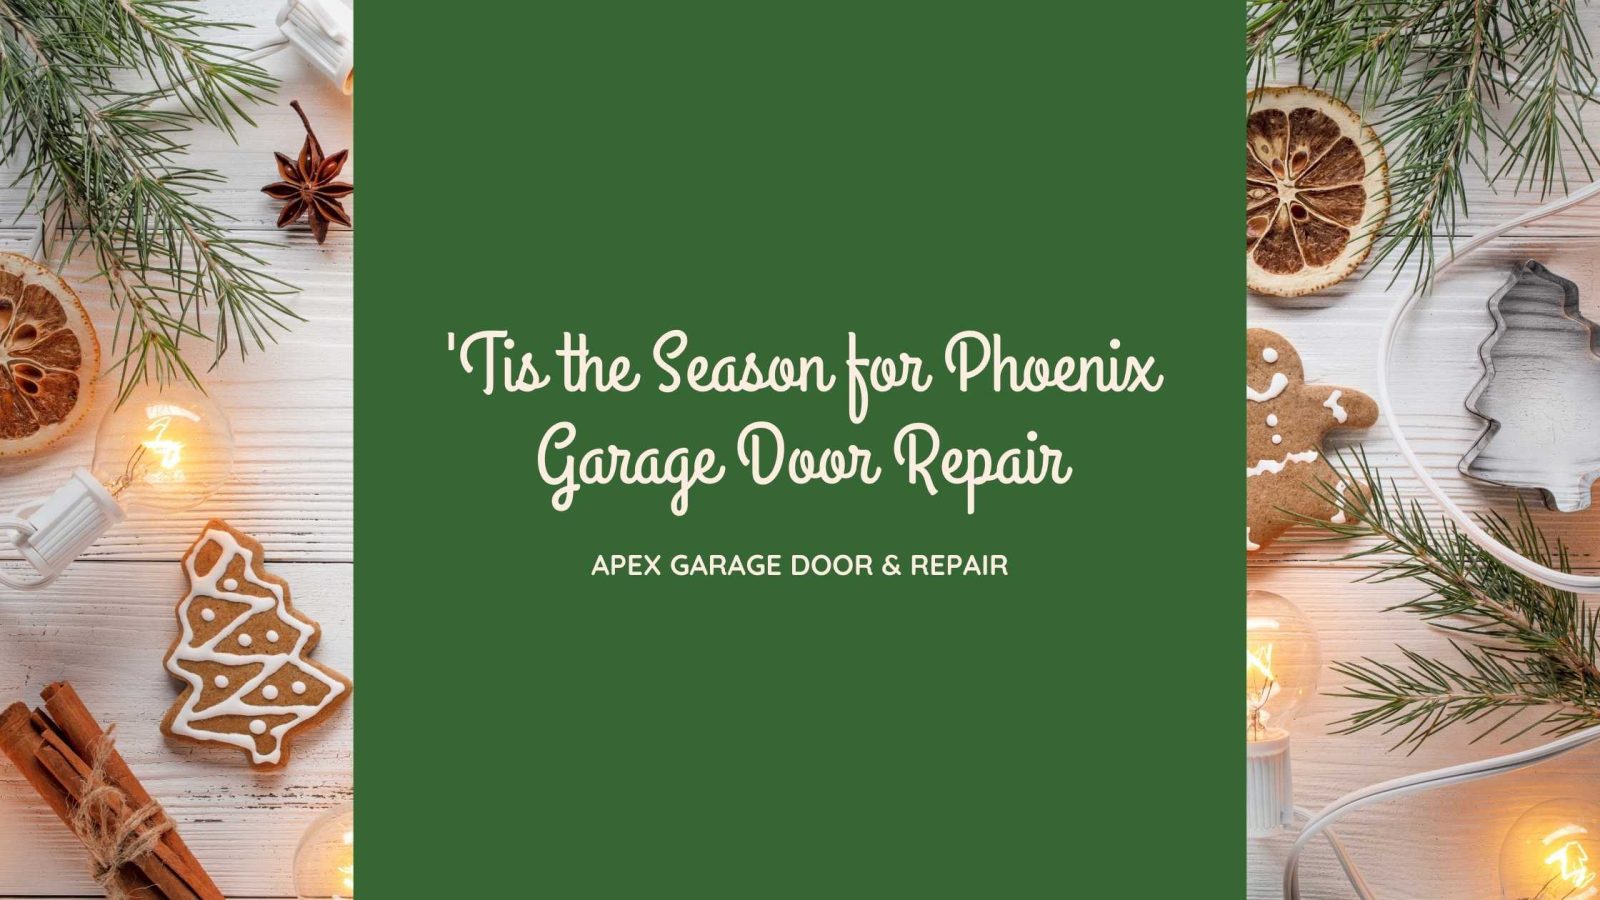 Phoenix garage door repair